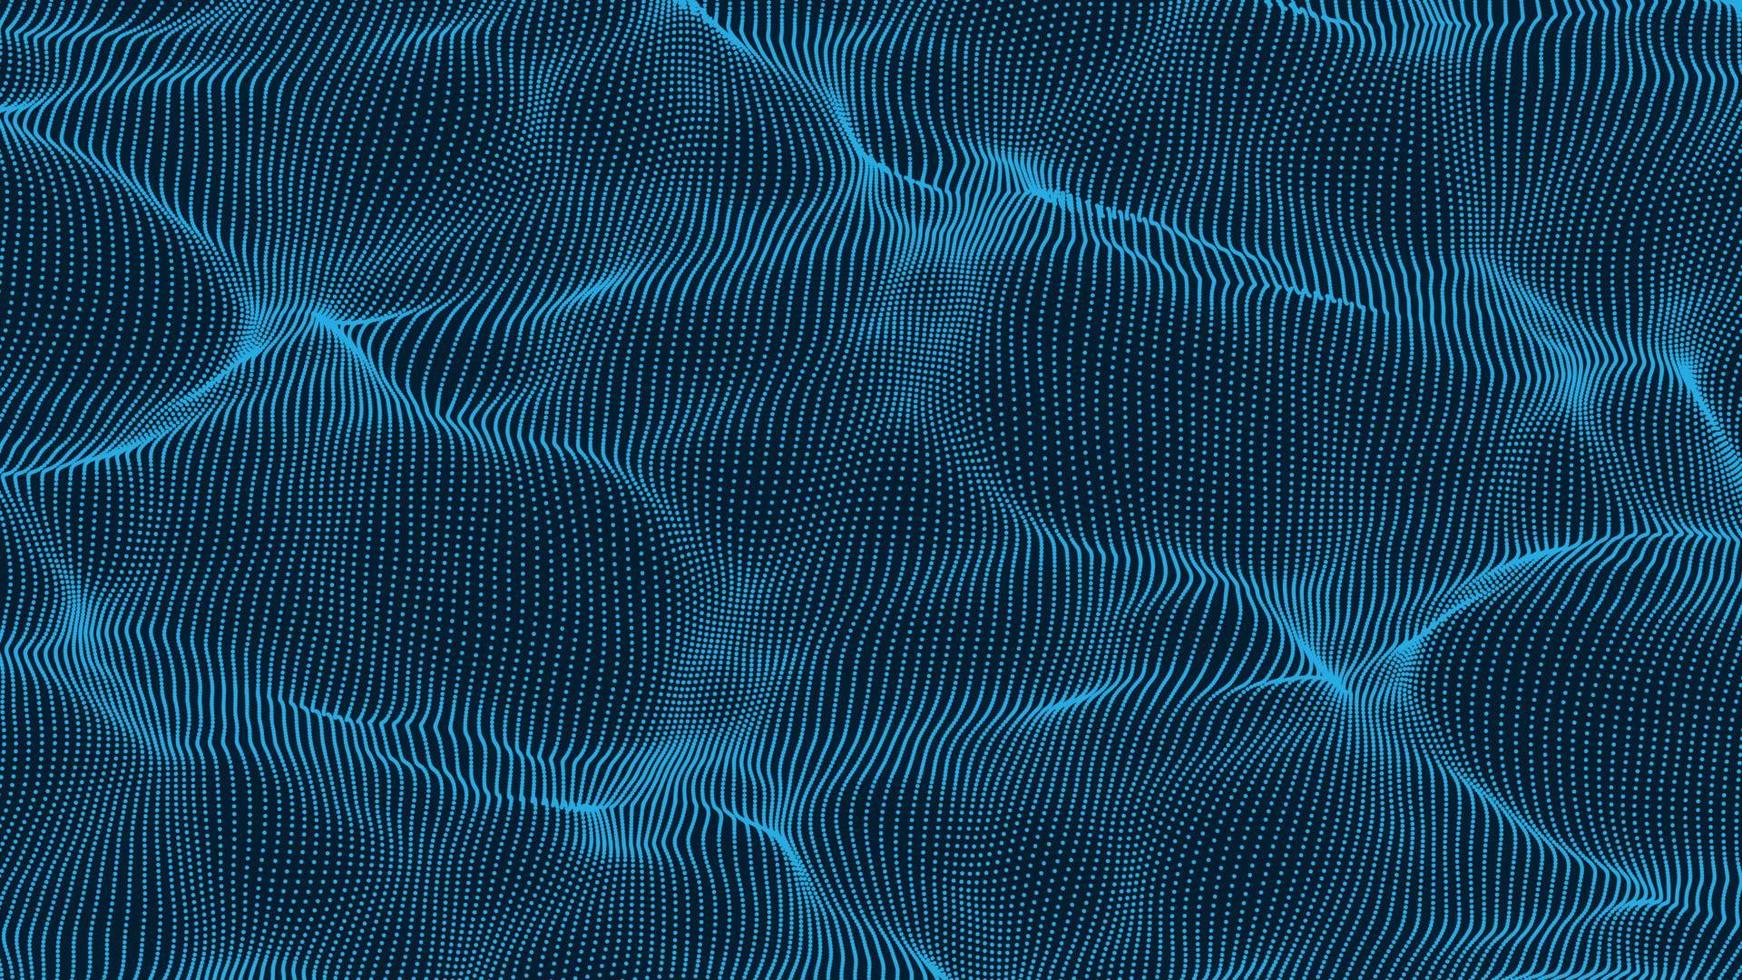 Vektorpartikelwellen. Ozean abstrakte Luftaufnahme. glatte Wellen von Punkten. eleganter Partikelfluss. eleganter technologiehintergrund für futuristische designs. vektor